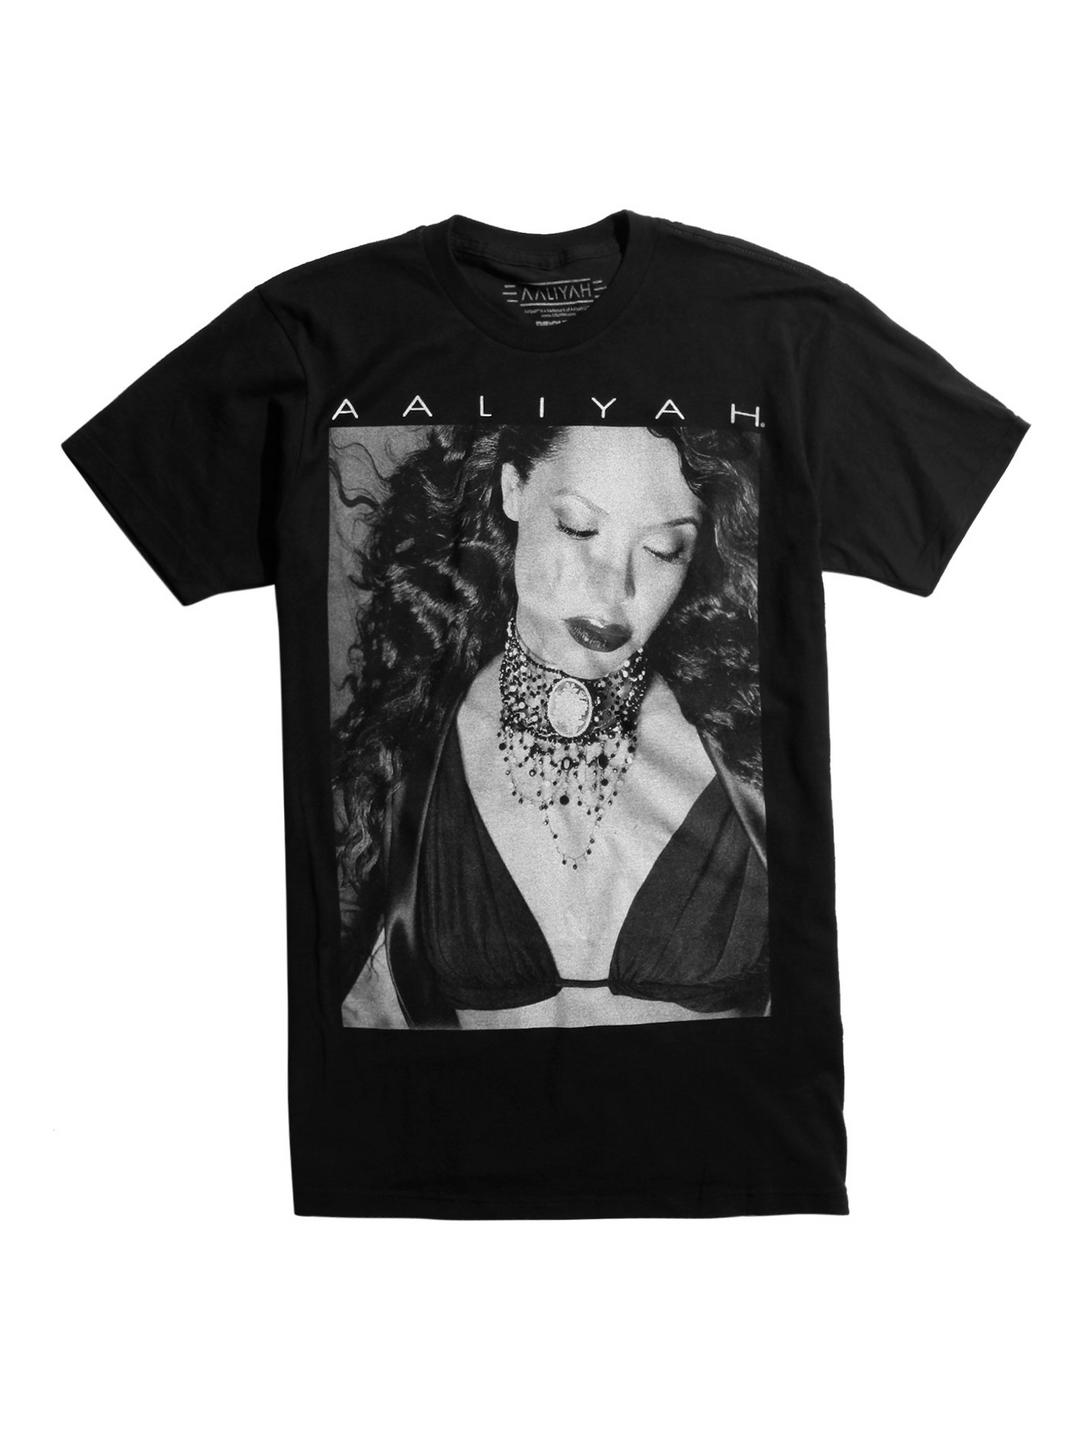 Aaliyah Black & White Photo T-Shirt, BLACK, hi-res